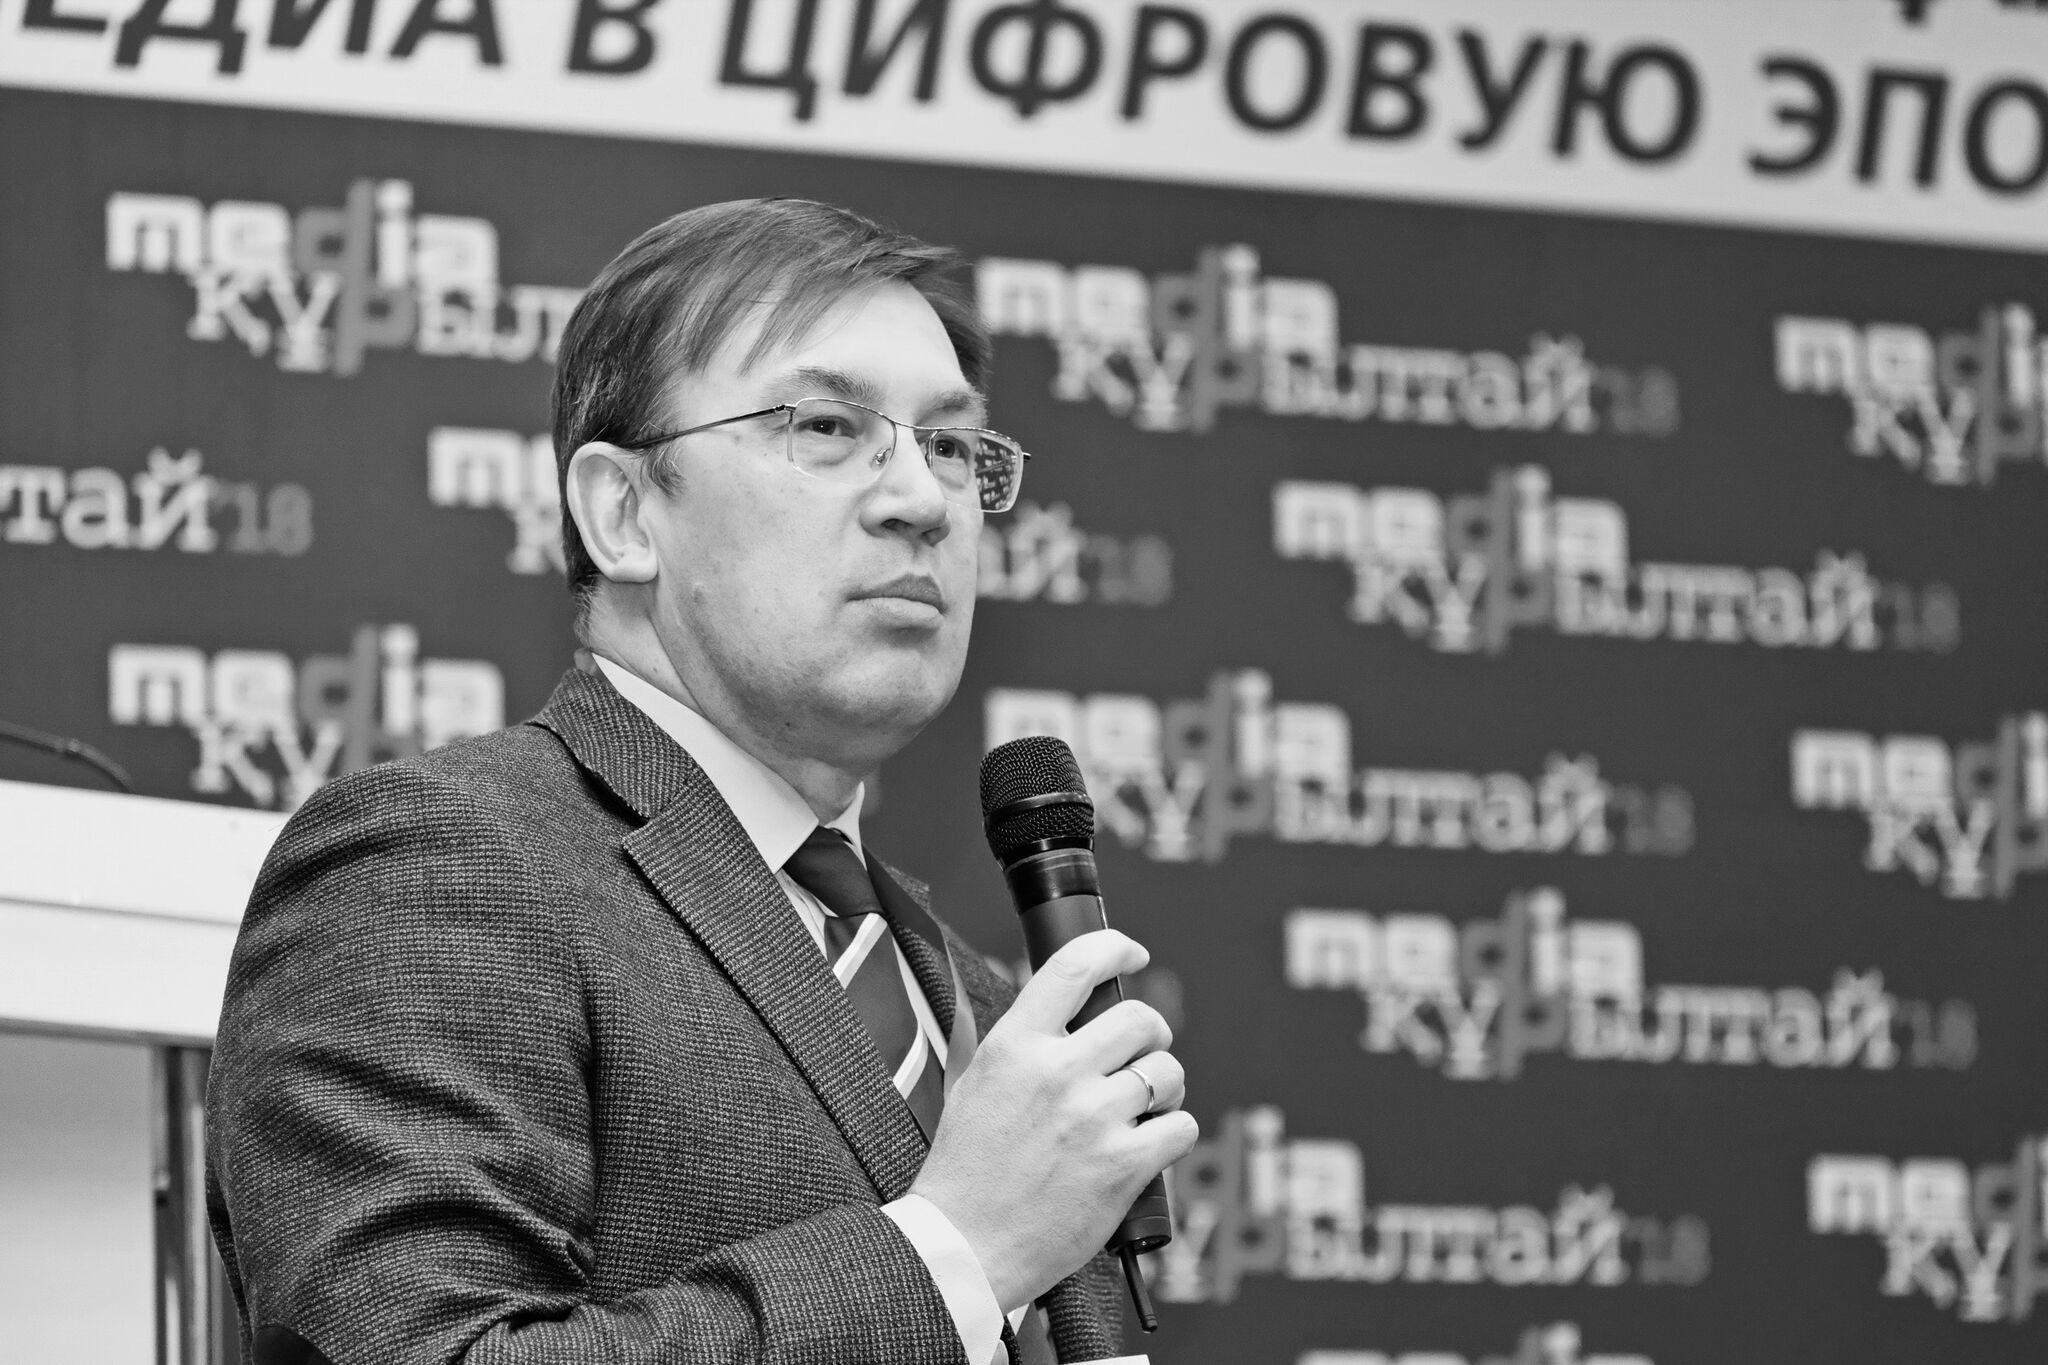 Умер главный редактор informburo.kz Михаил Дорофеев